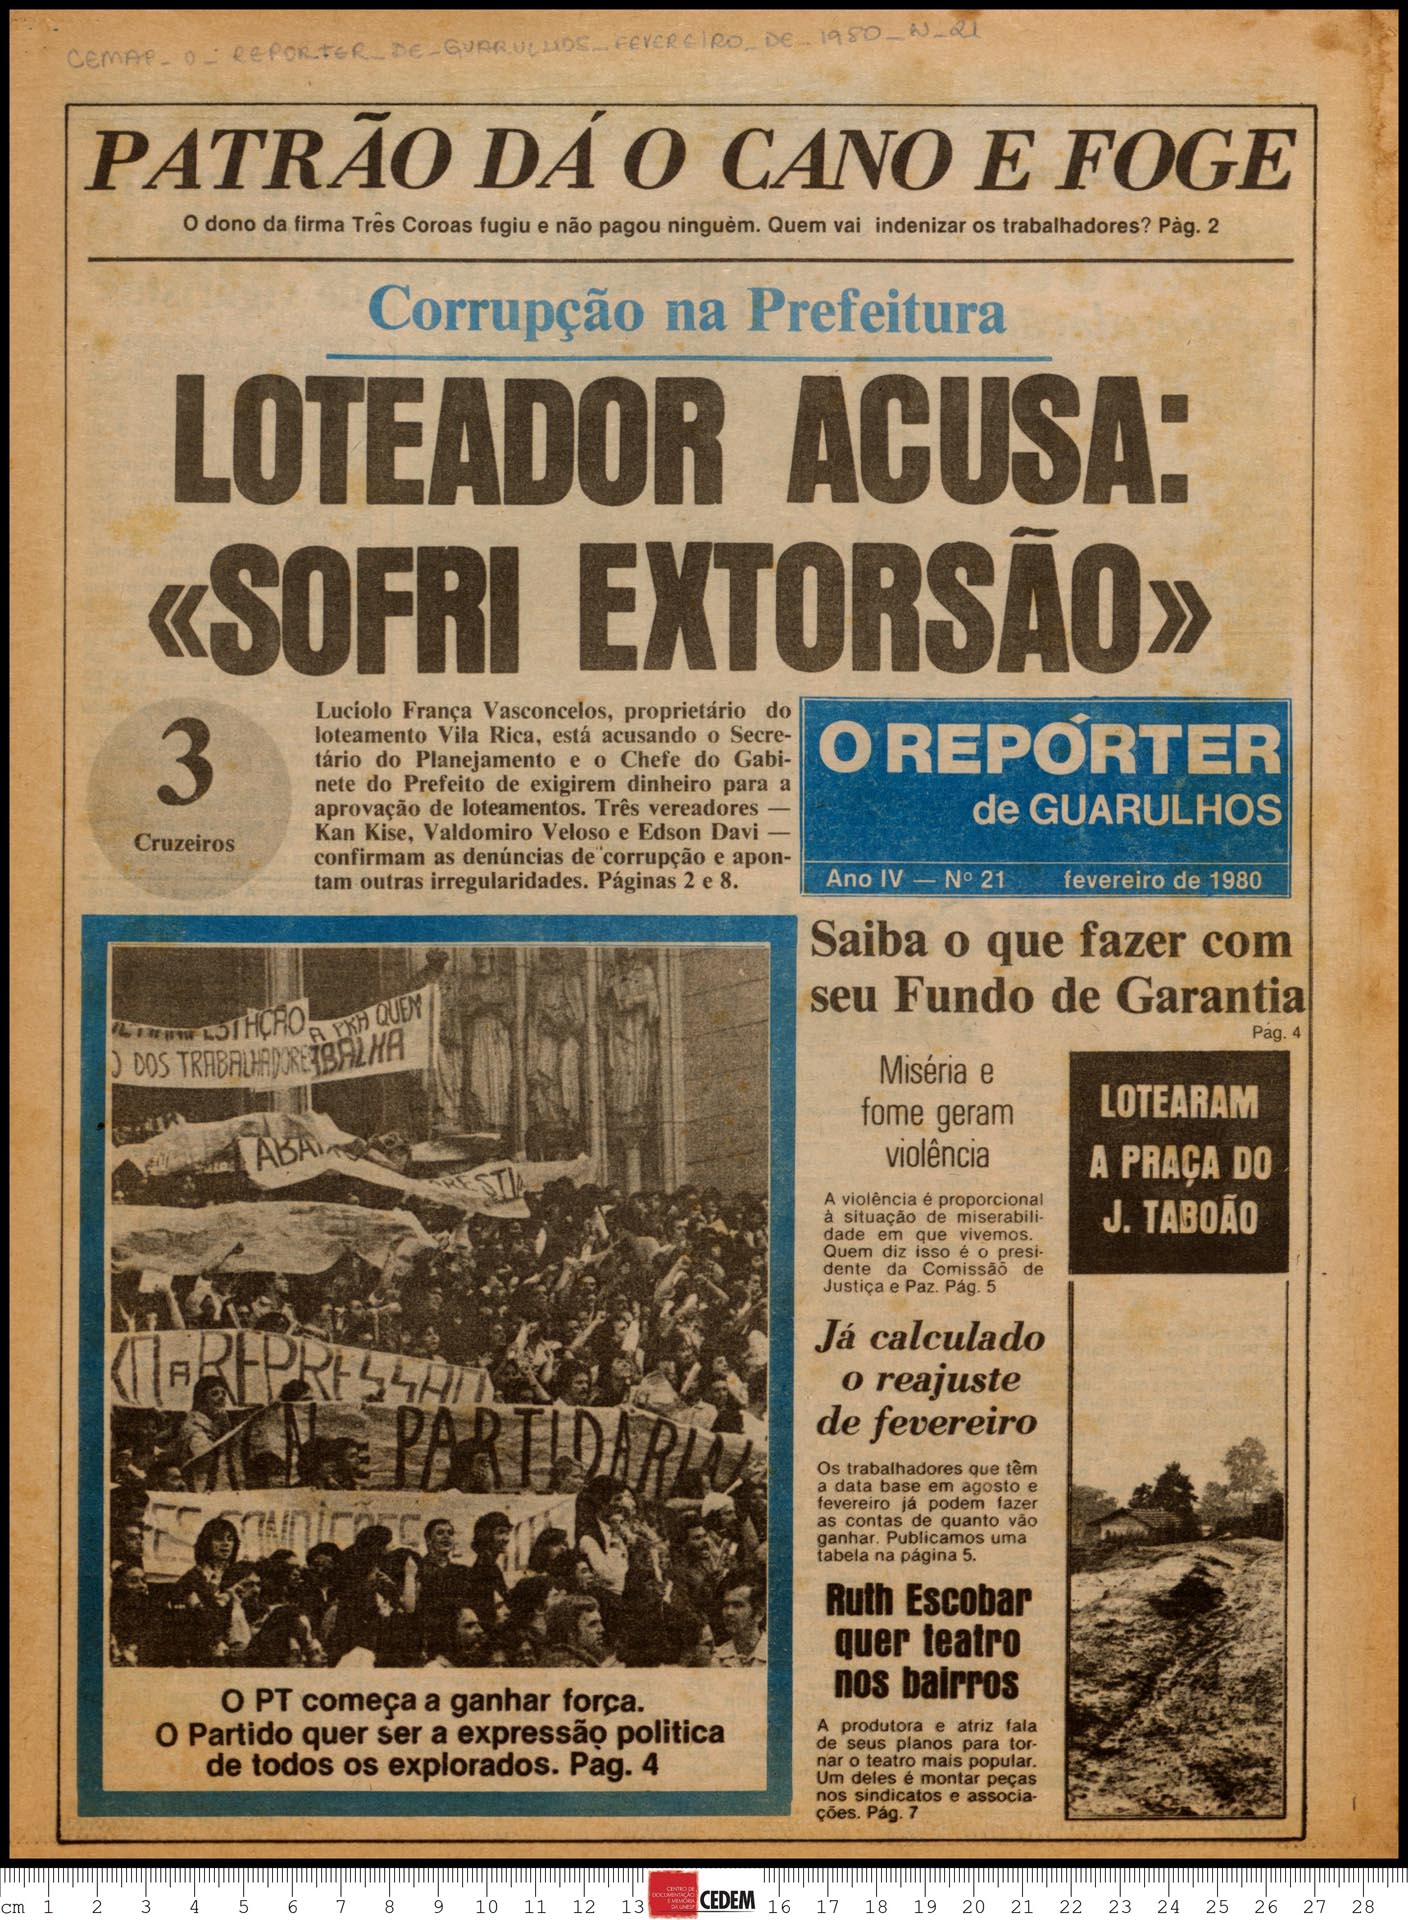 O reportér de Guarulhos - 21 - fev. 1980